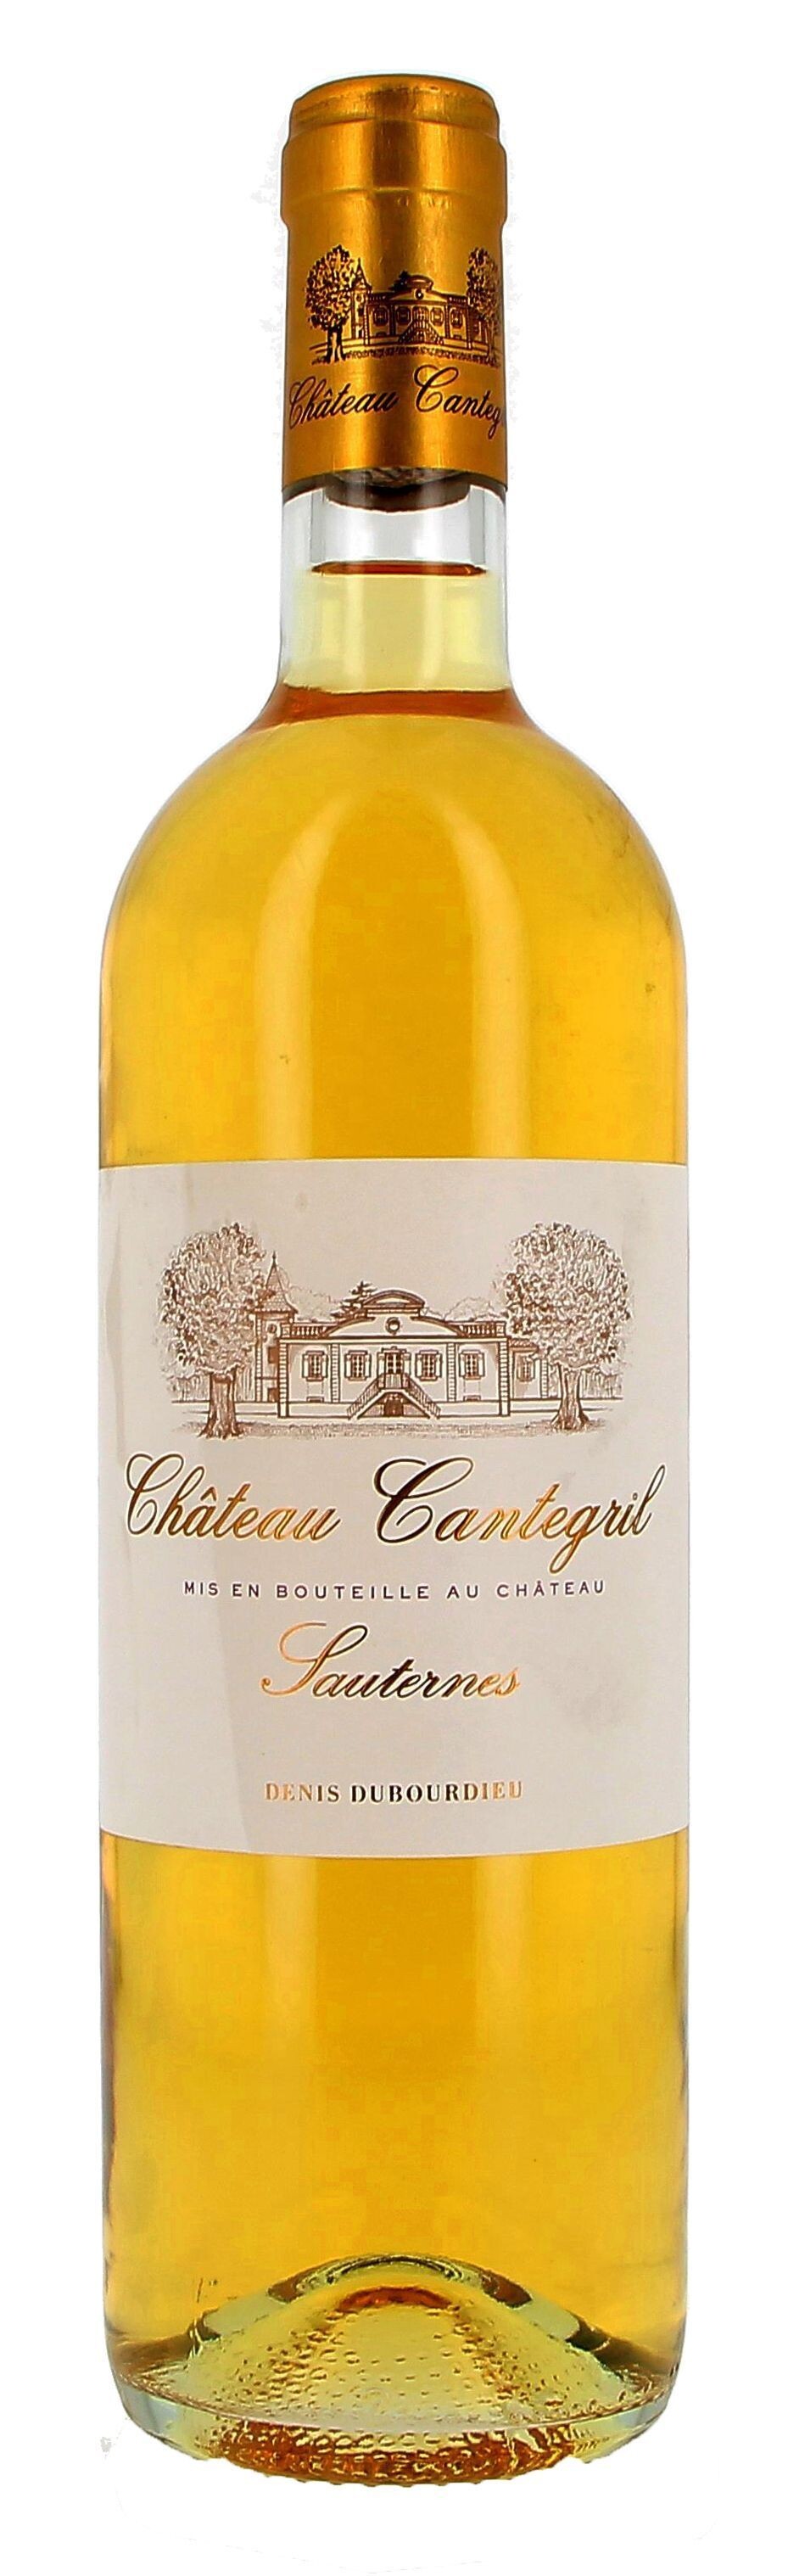 Chateau Cantegril 75cl 2014 Sauternes (Wijnen)